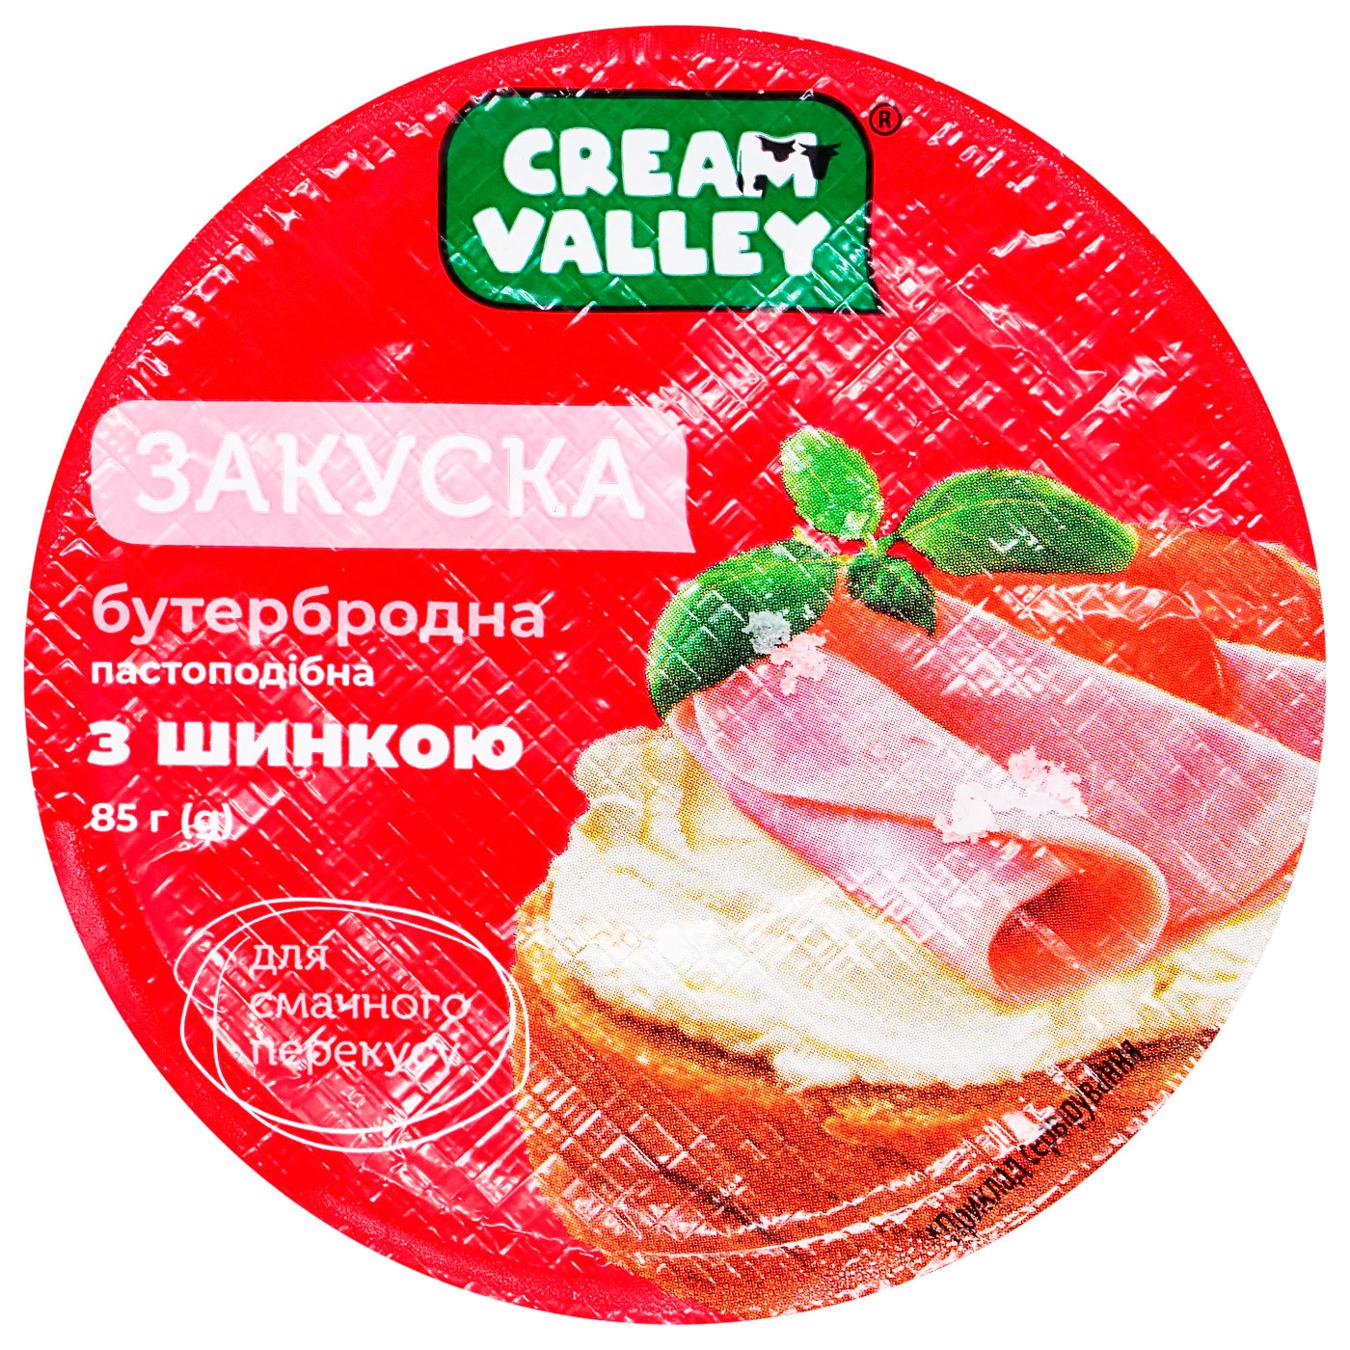 Snack Cream Valley sandwich with ham 85g